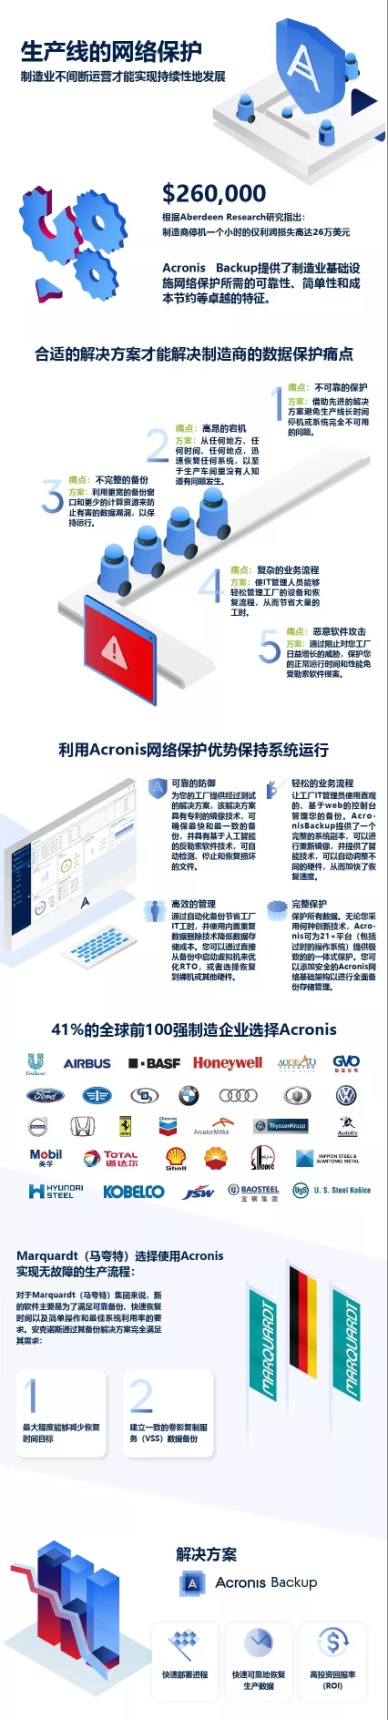 Acronis—生产线故障的最强克星，专治各种数据保护难题！